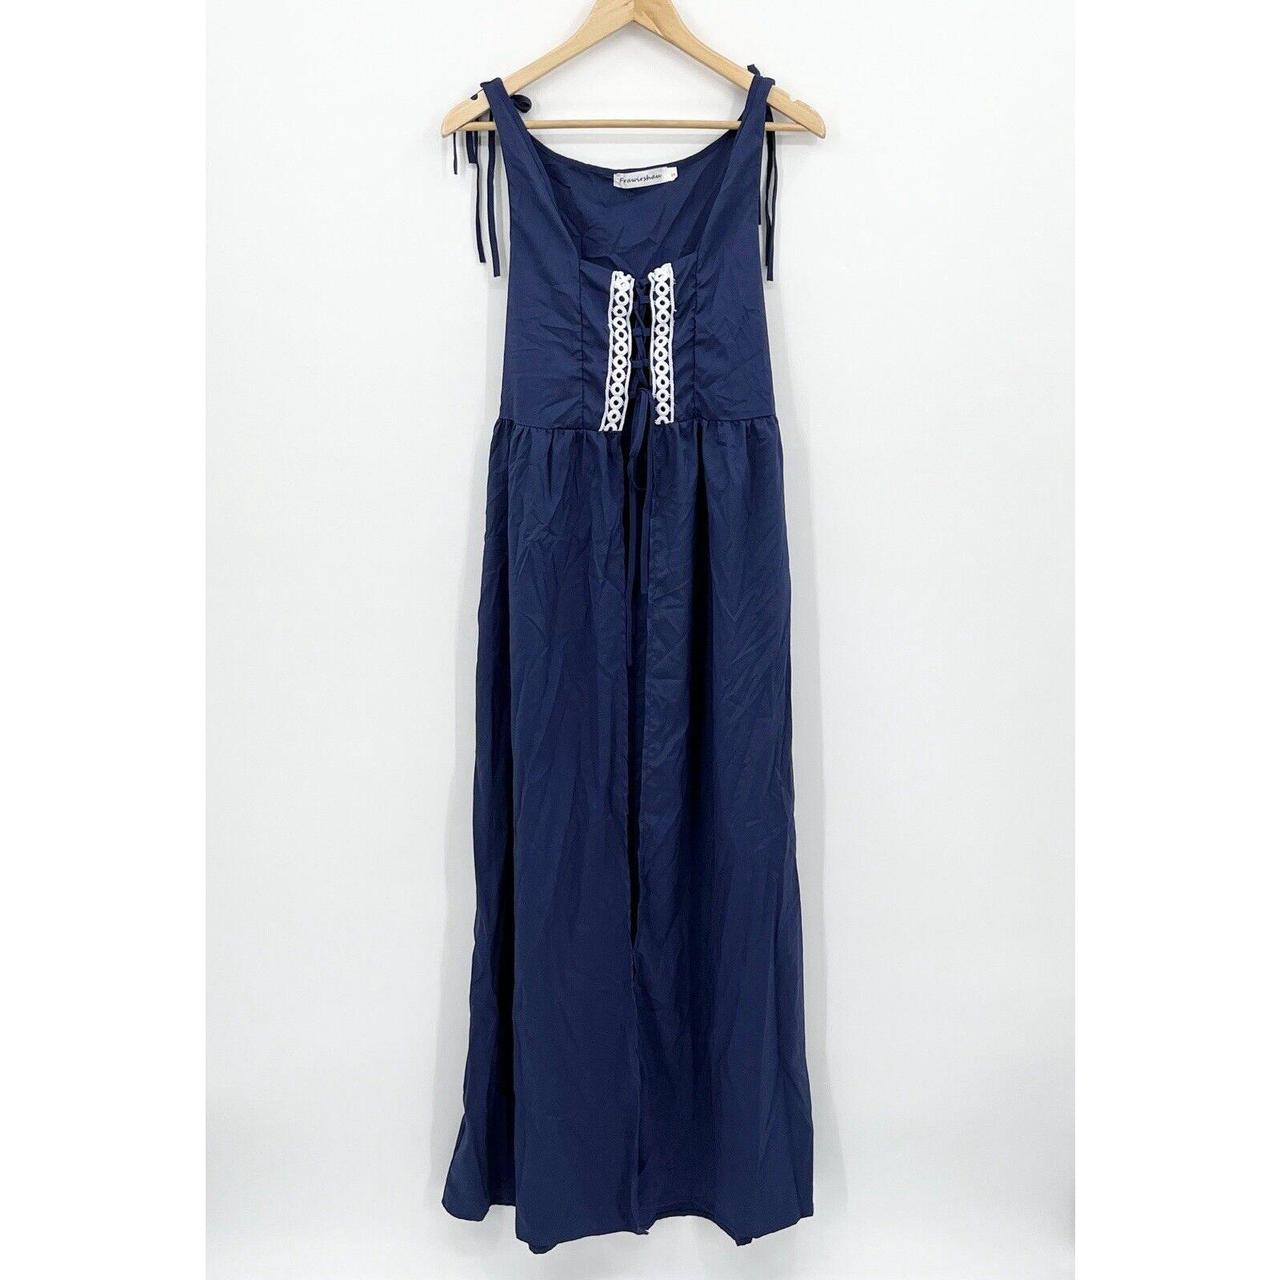 Ren Women's Blue Dress